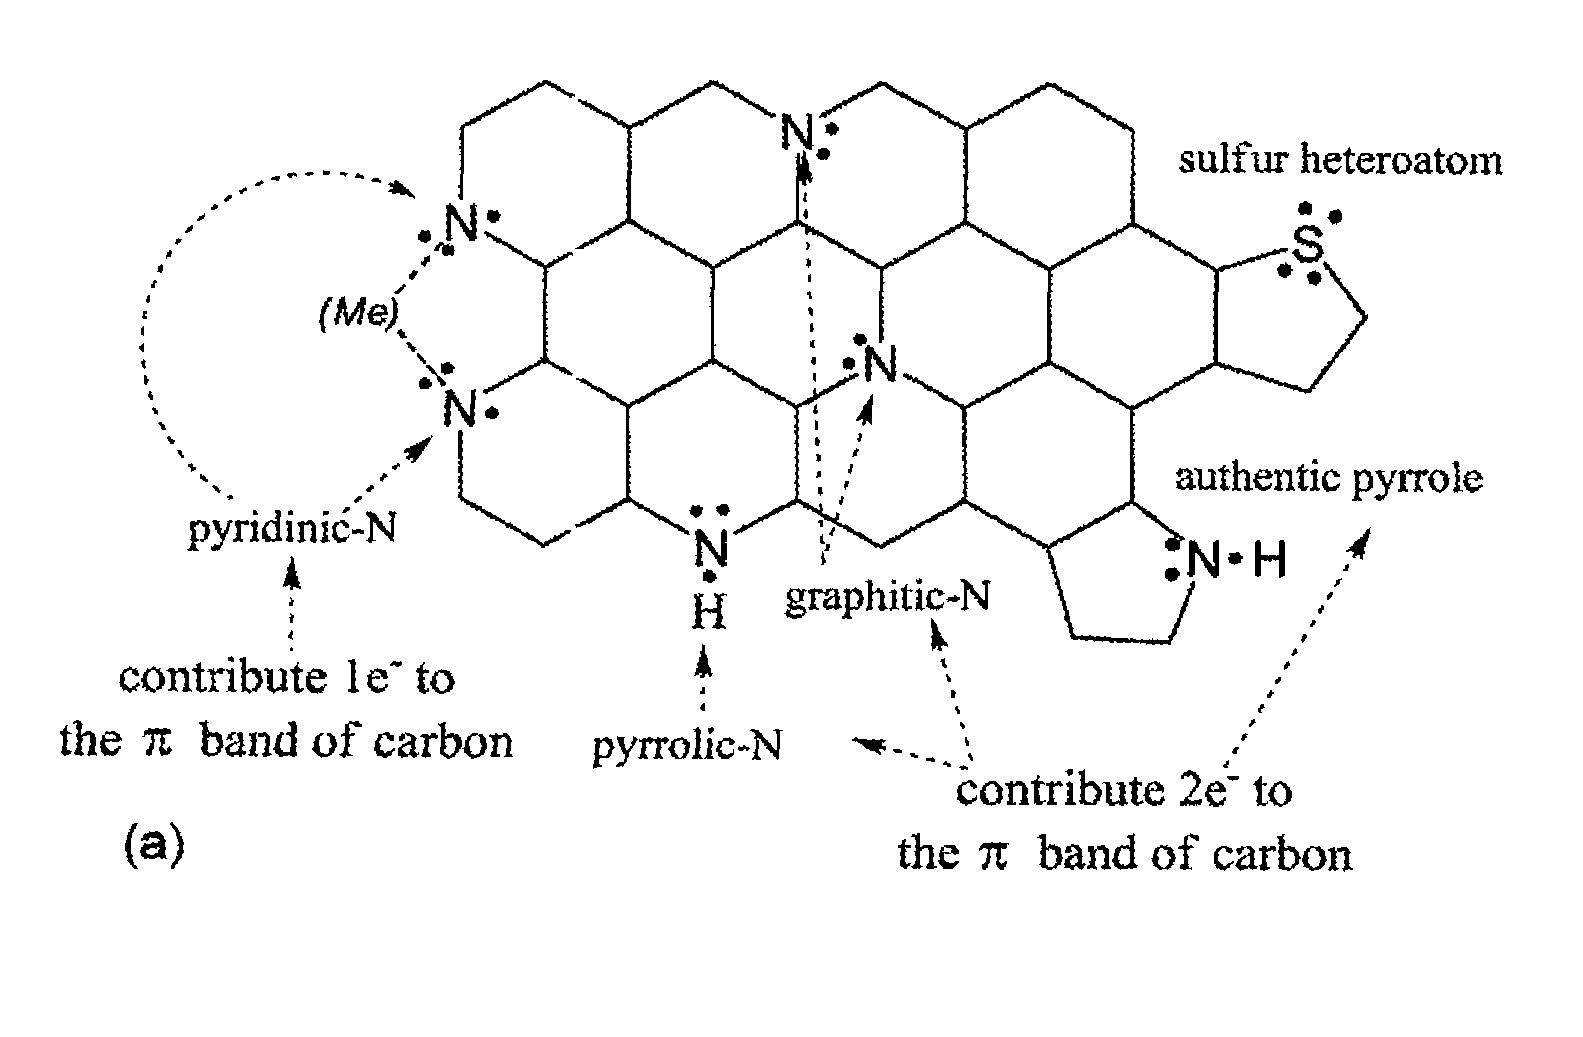 Non-precious metal catalysts prepared from precursor comprising cyanamide